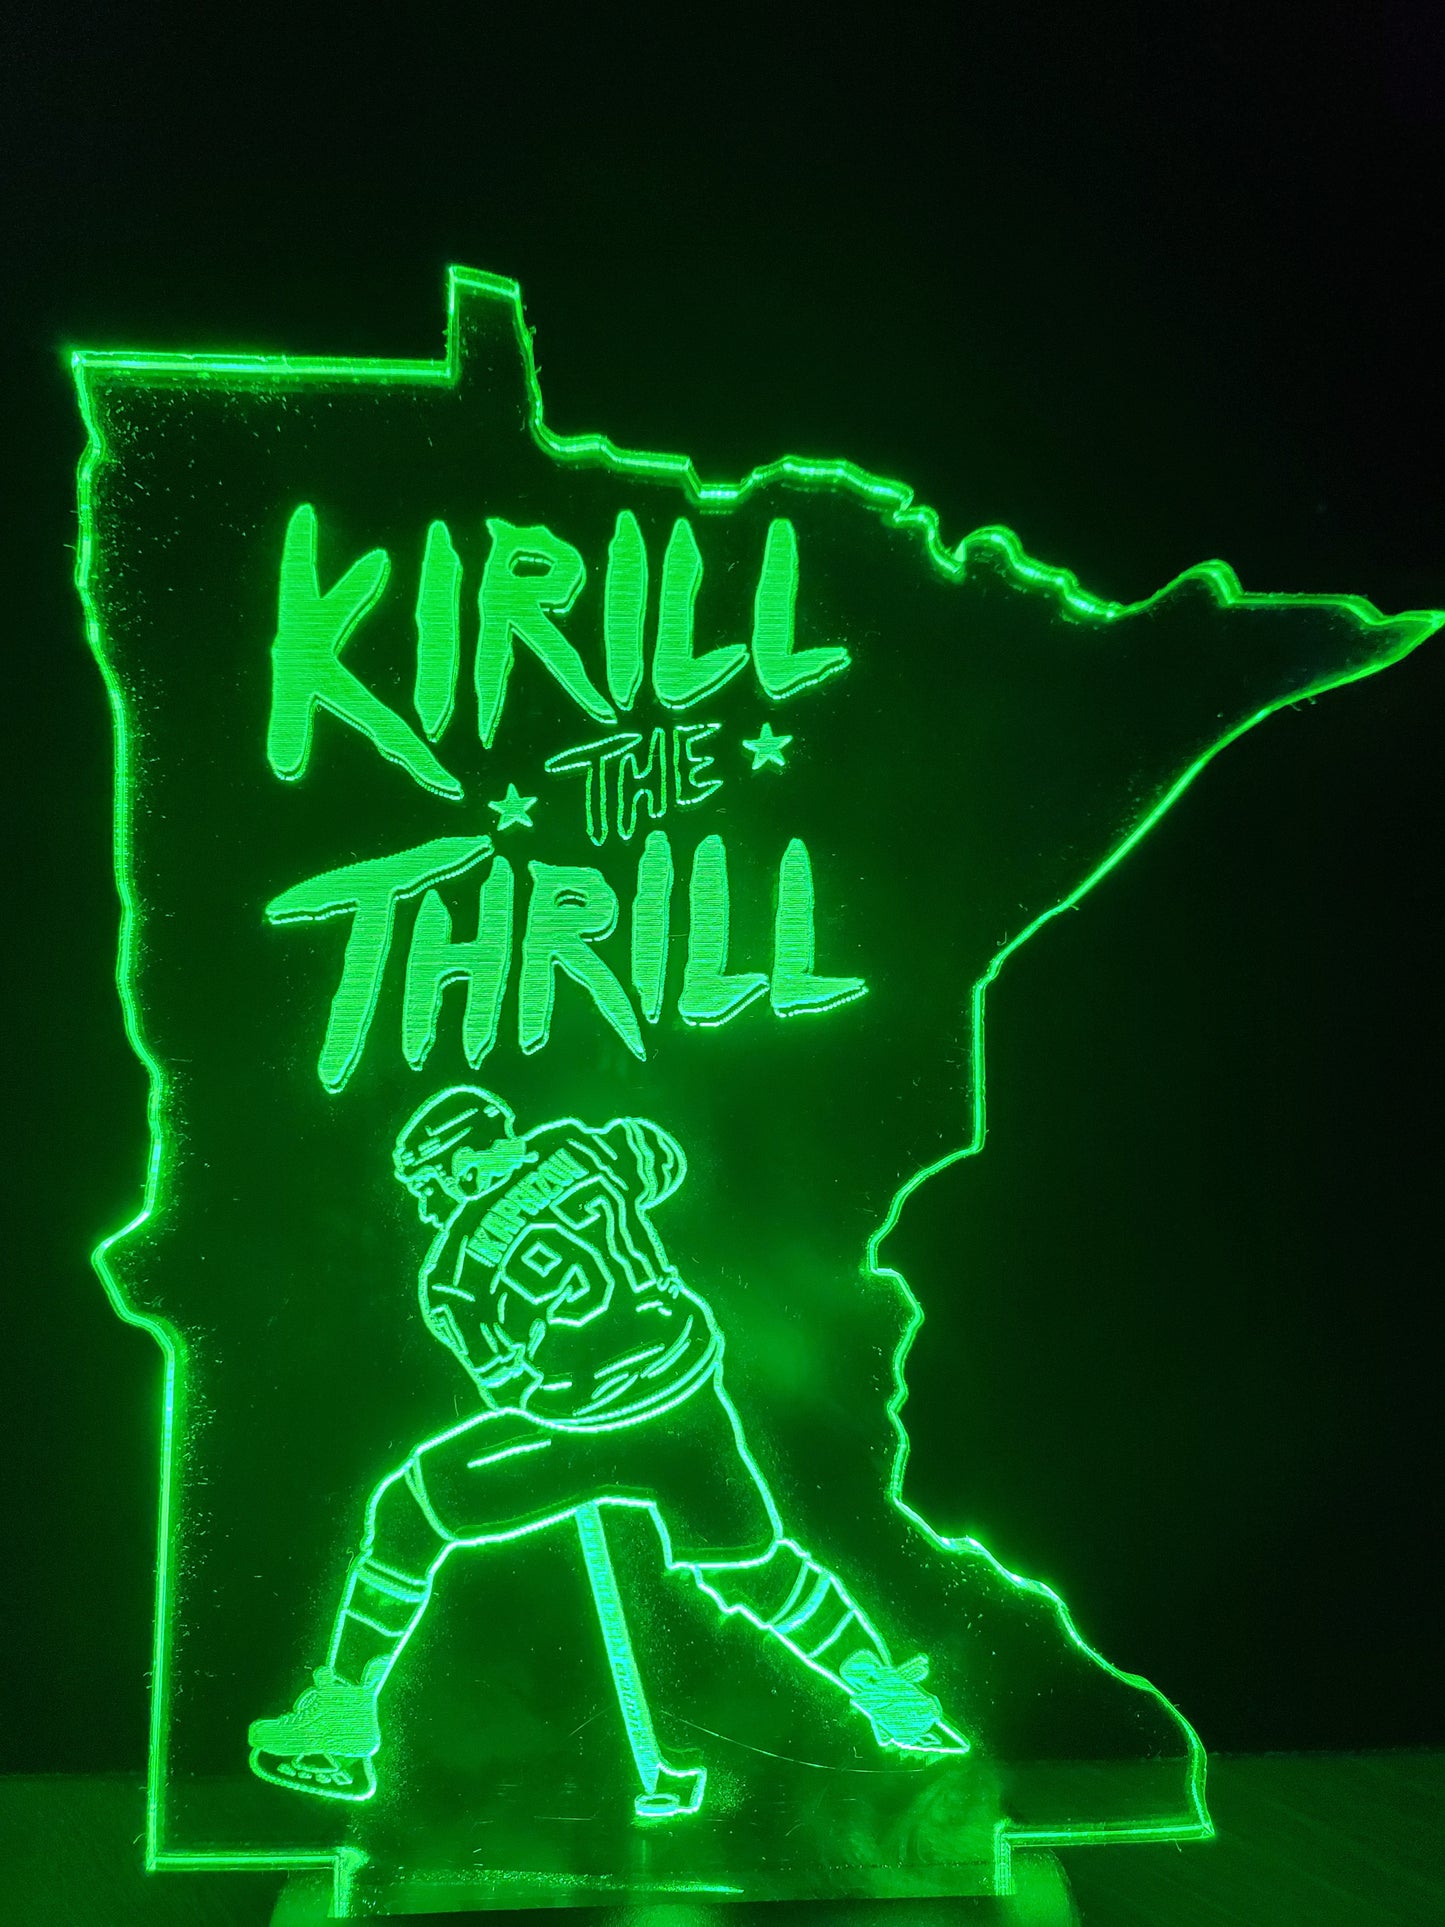 Kirill The Thrill (mini LED)